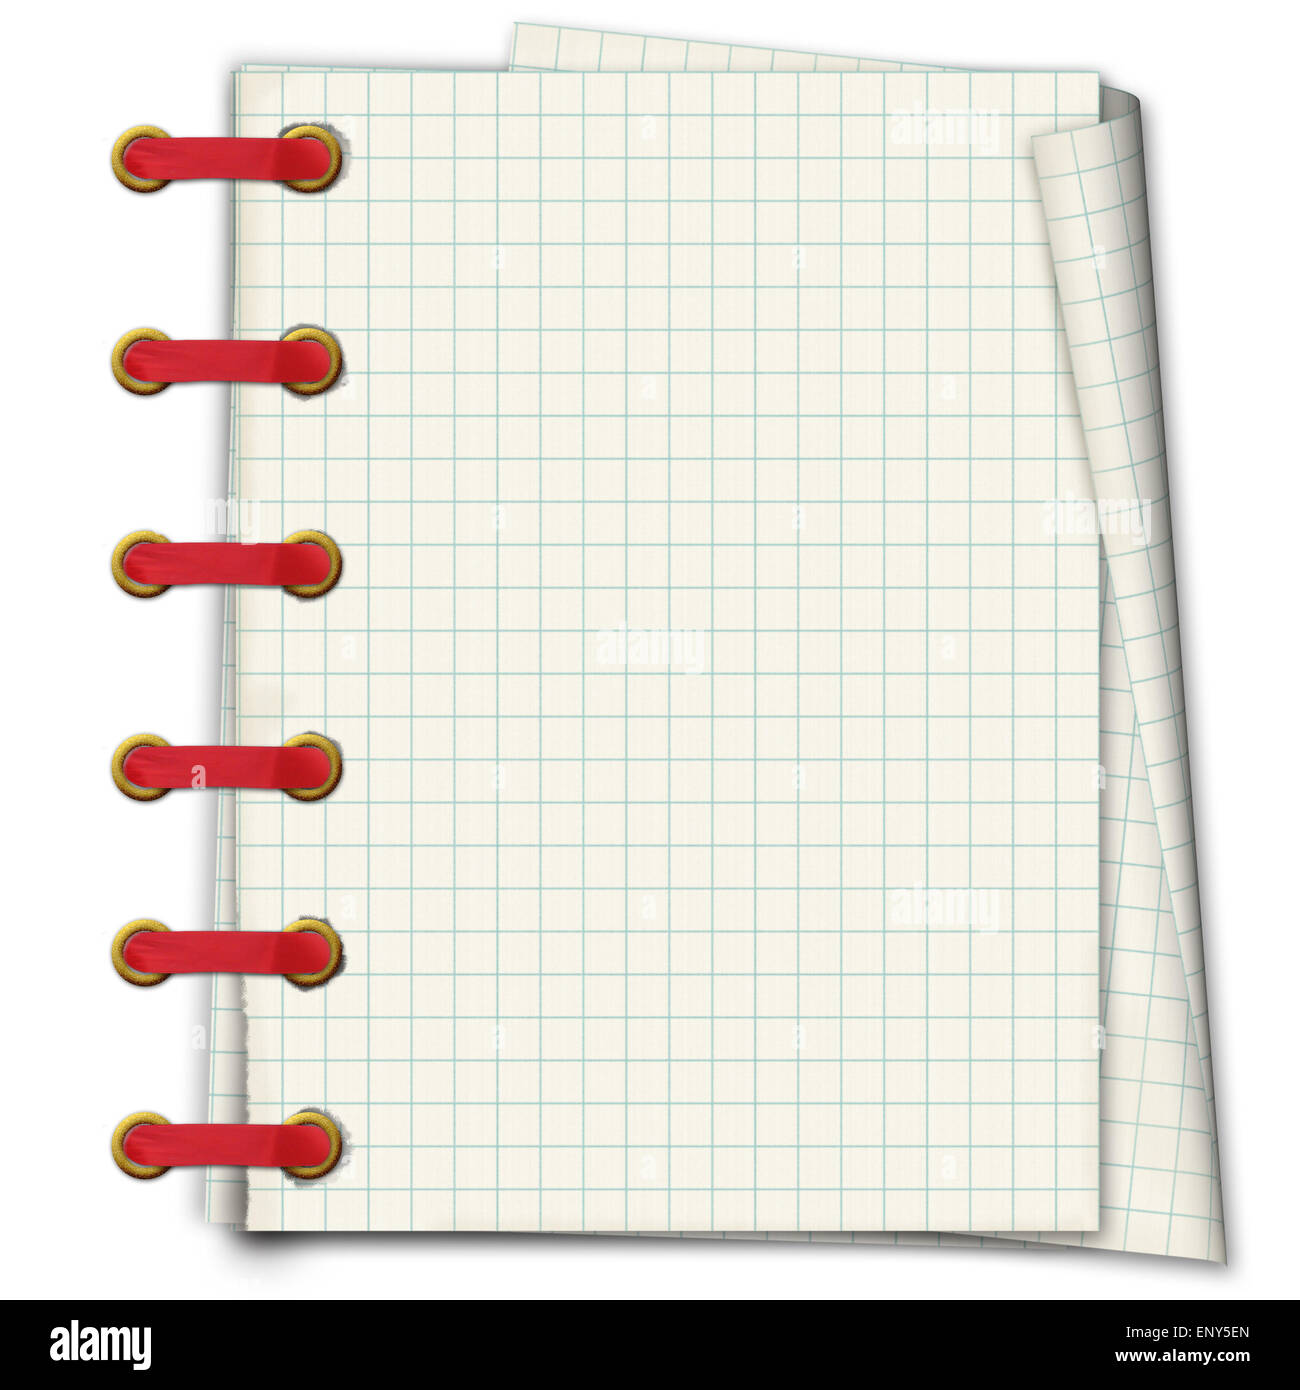 Grunge-Notebook. Das Heft in einem Abschnitt mit goldenen Clip und rotes  Band Stockfotografie - Alamy